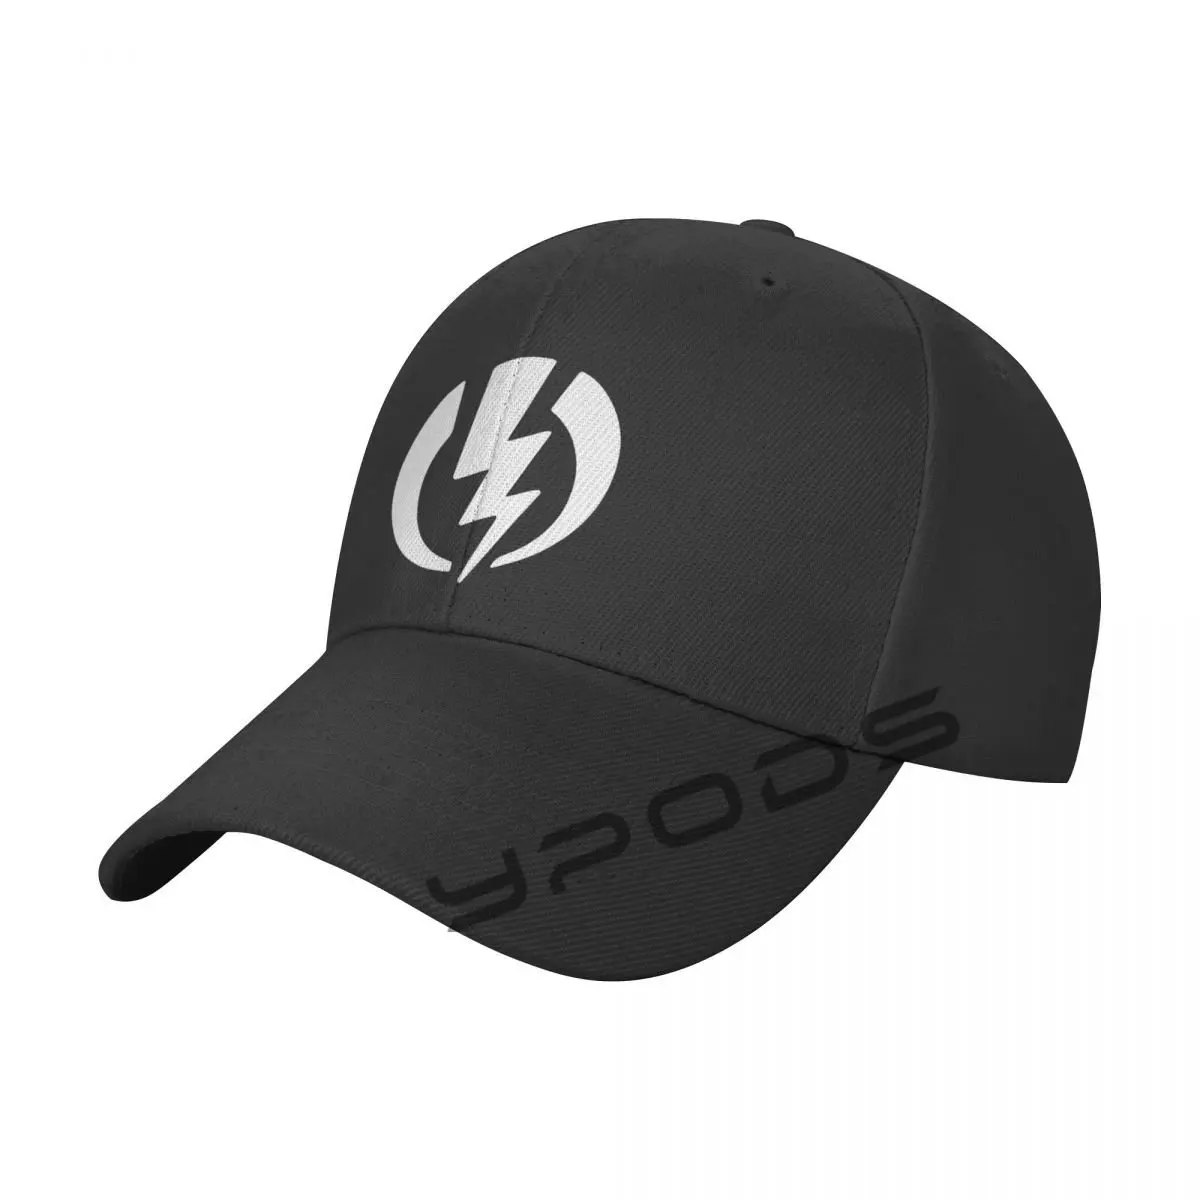 

Electric Electrician Symbol Men's Classic Baseball Cap Adjustable Buckle Closure Dad Hat Sports Cap